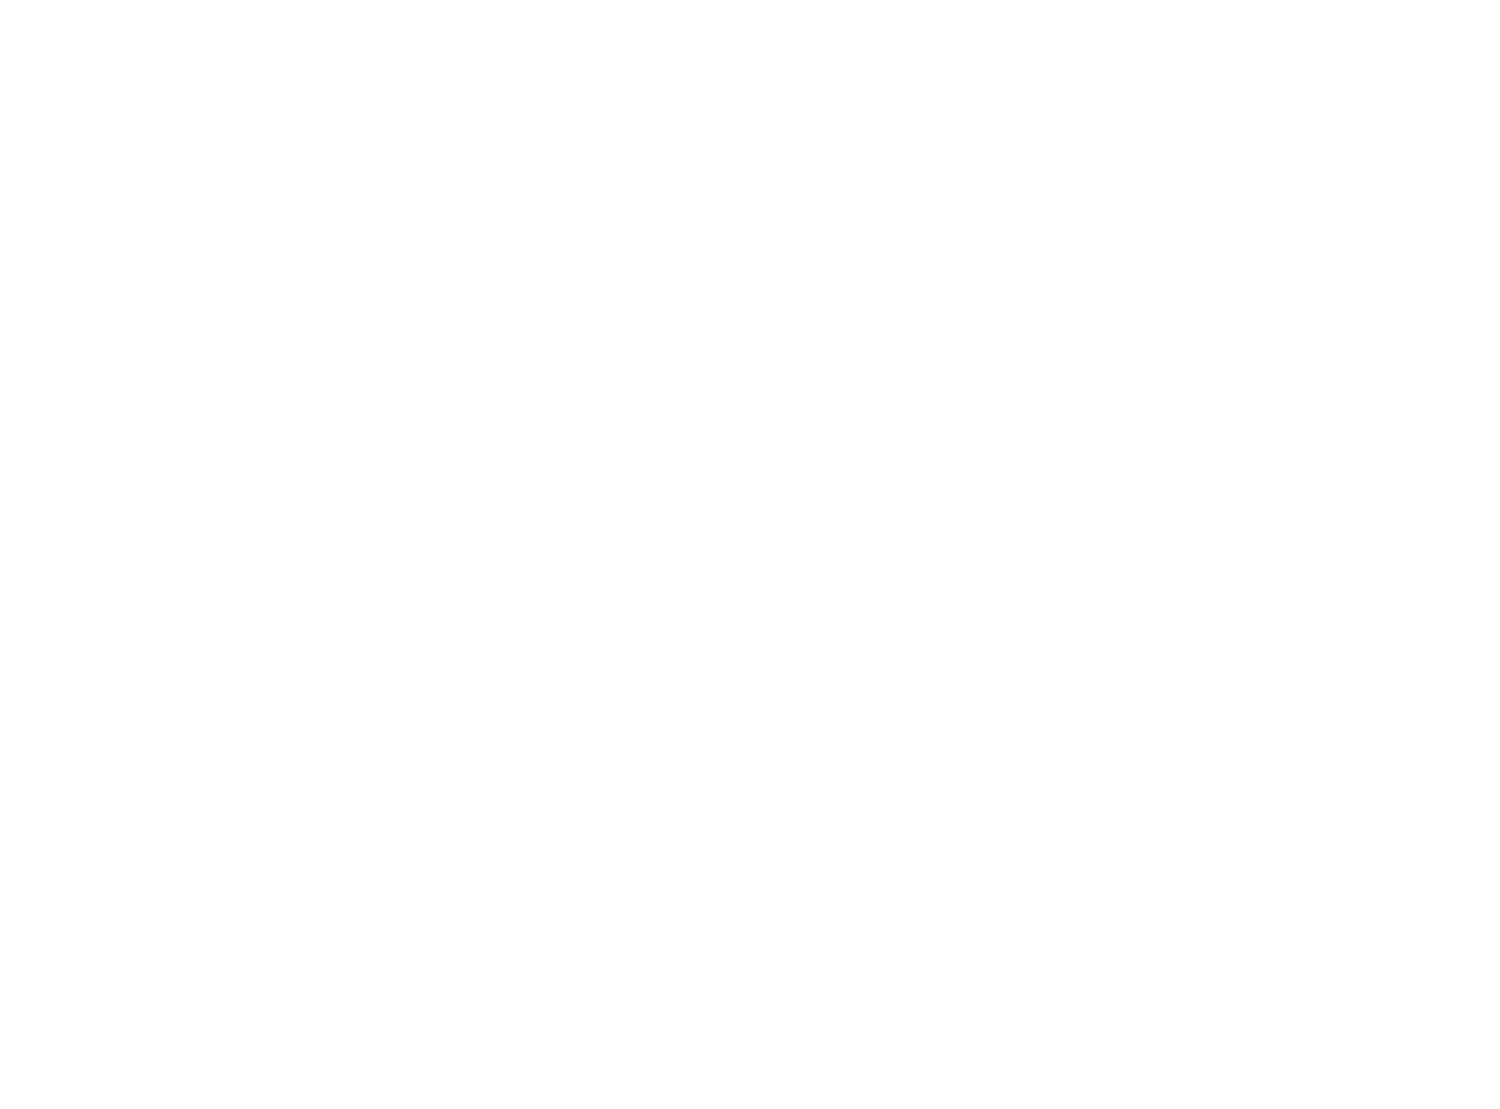 Flashpoint MVMNT